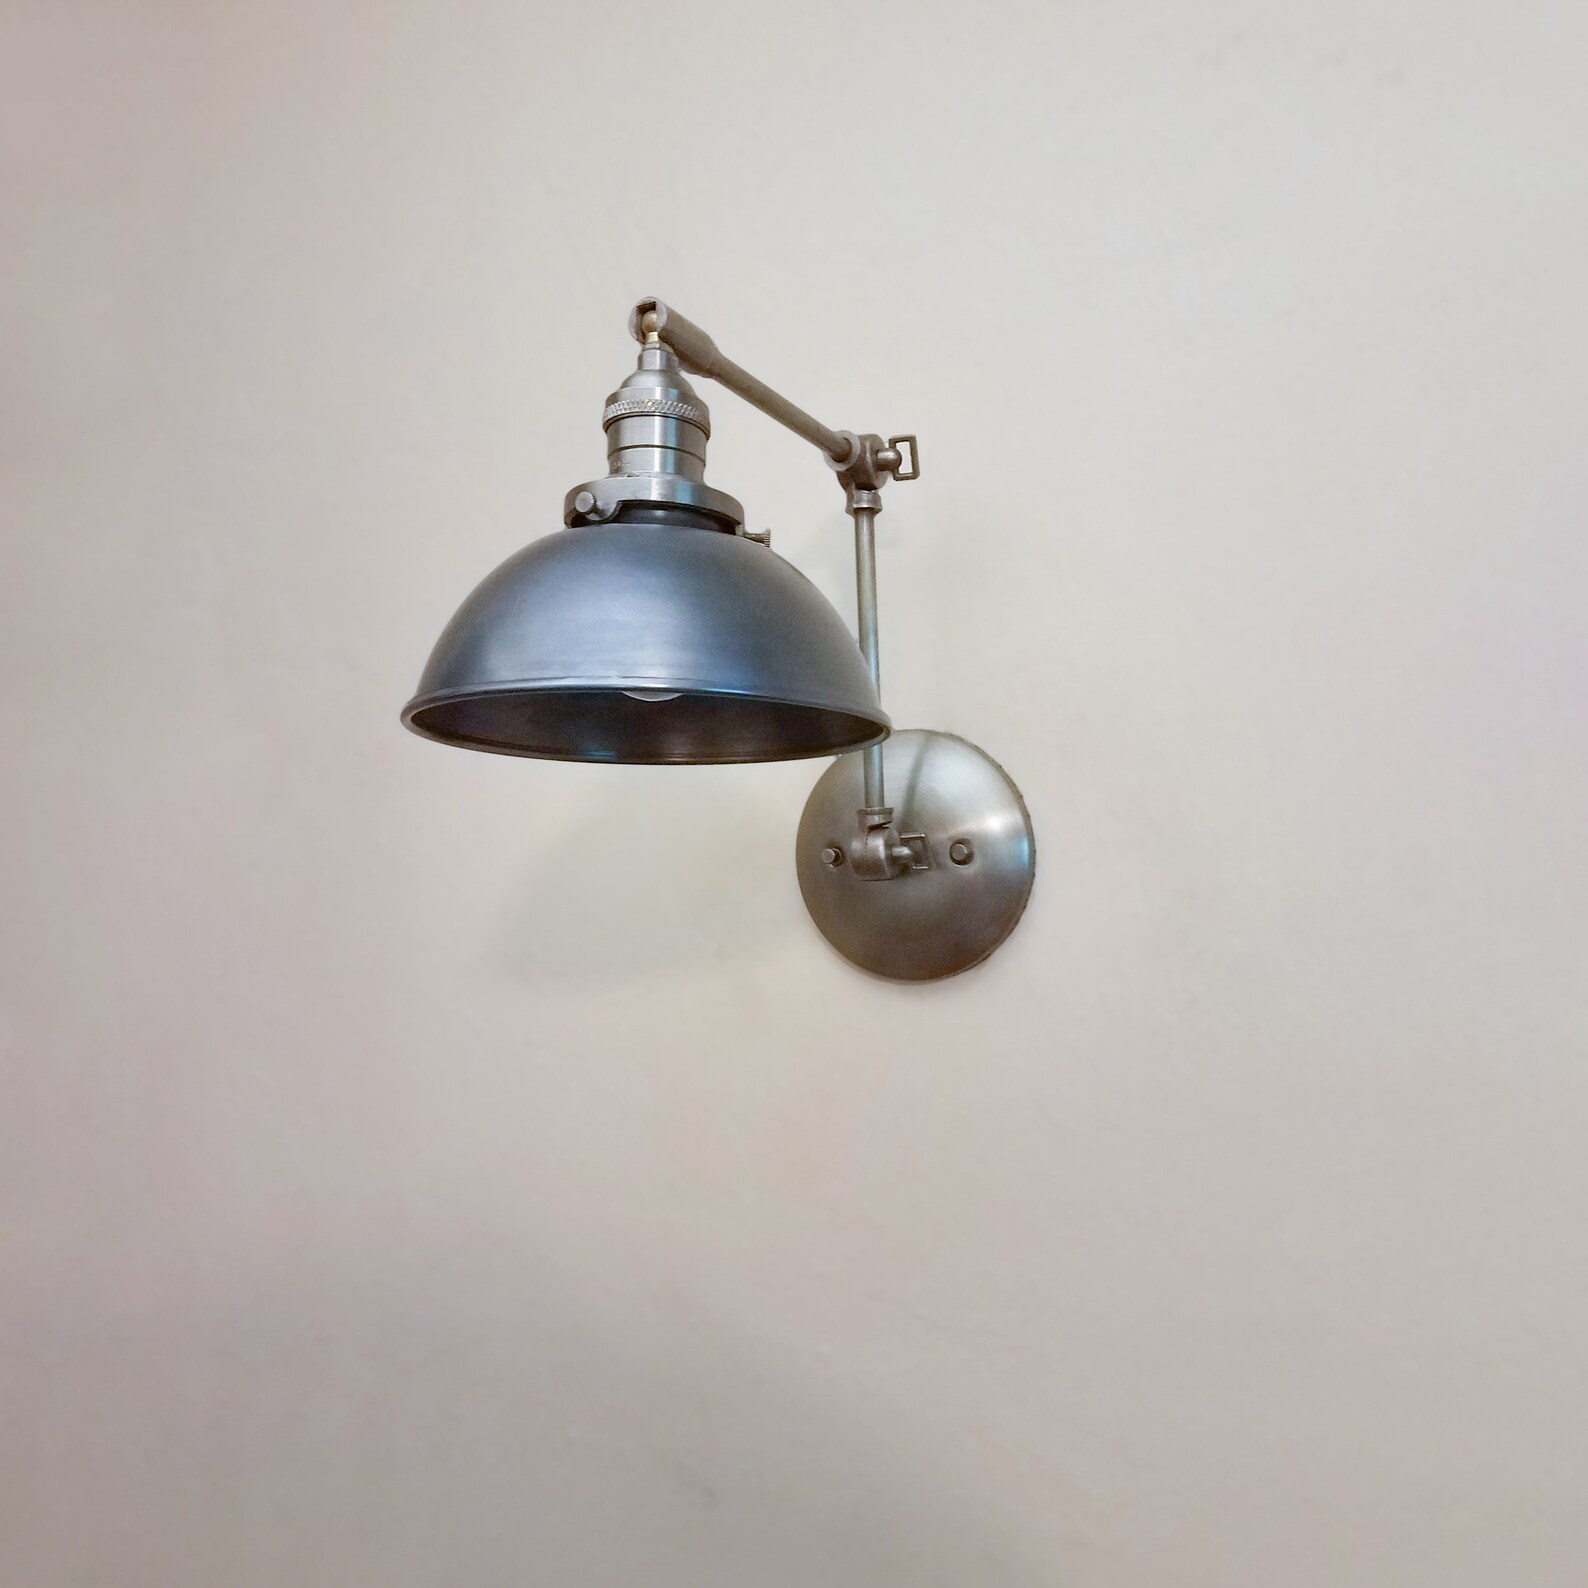 Estantes de cocina lámpara de pared ajustable Sconce | Etsy